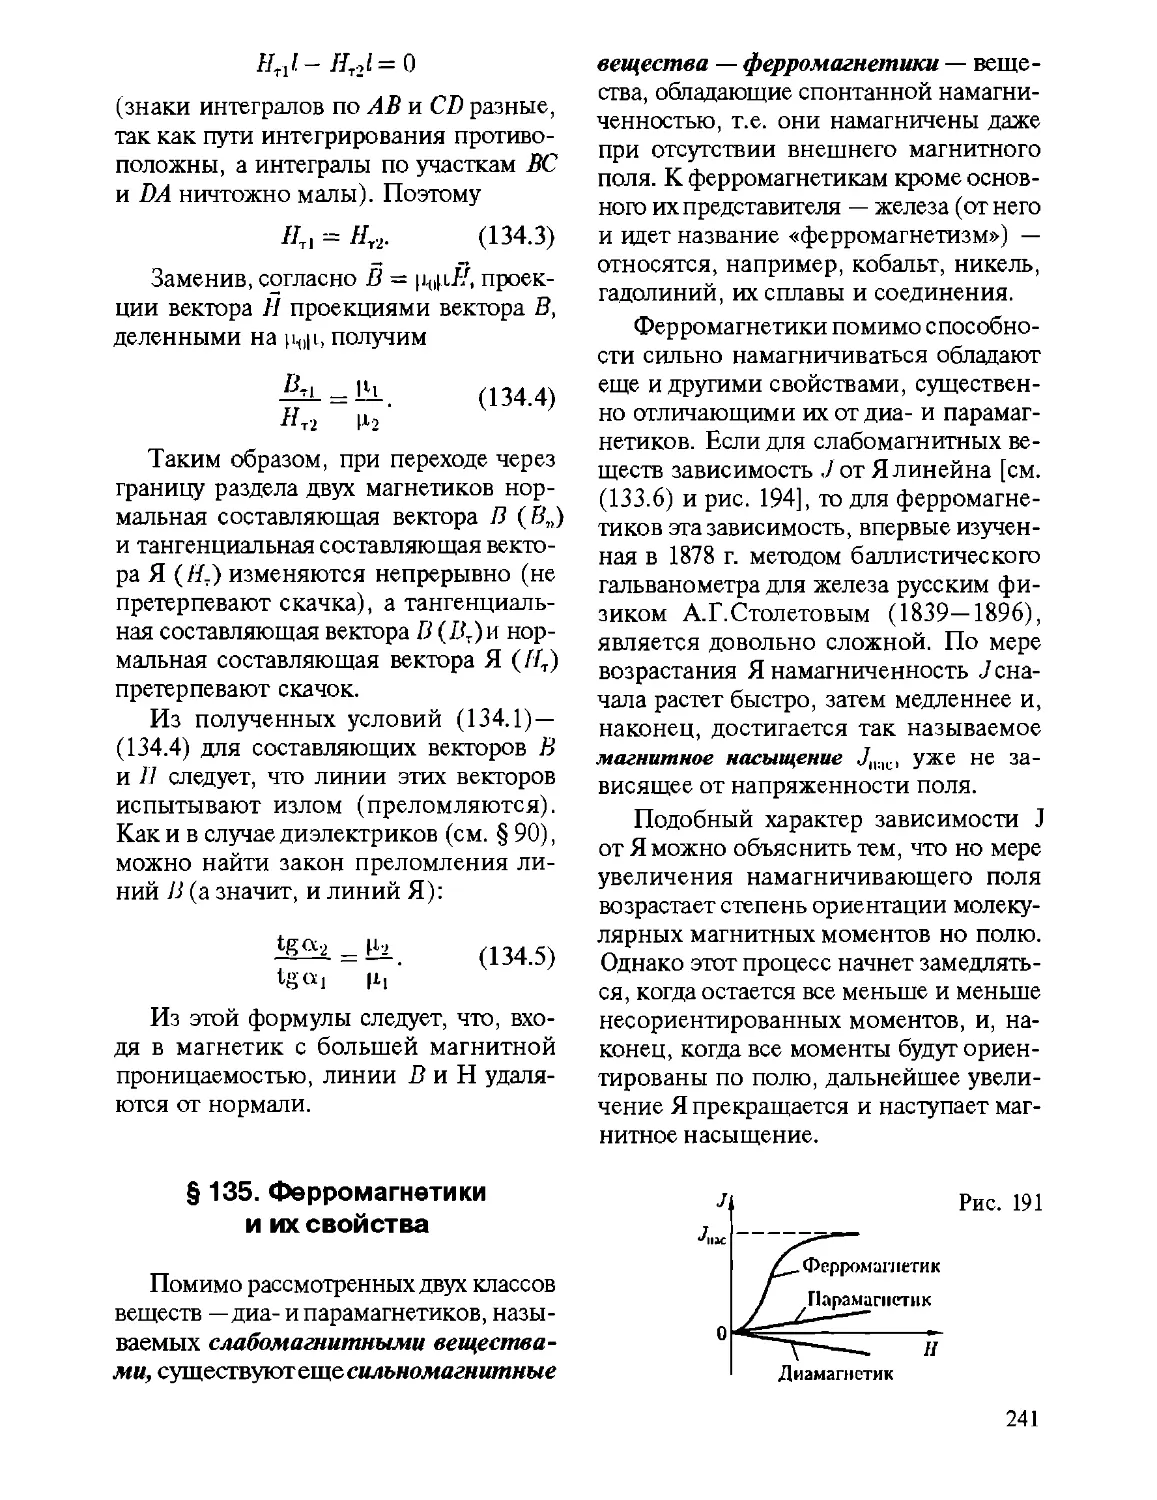 § 135. Ферромагнетики и их свойства